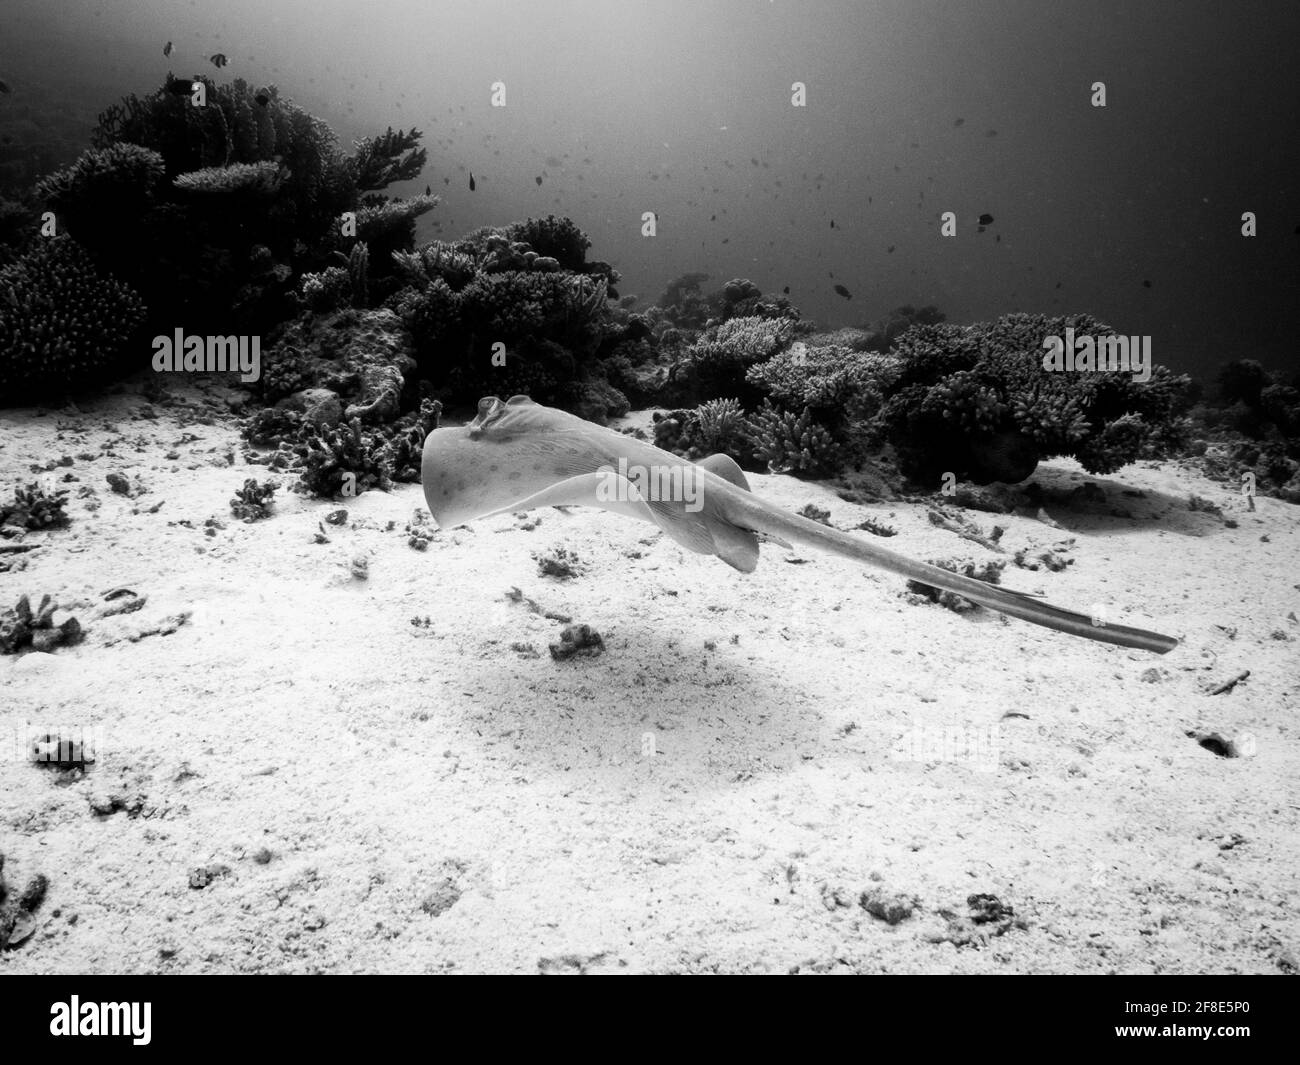 Immagine in scala di grigi di una stingray che nuota sott'acqua Foto Stock